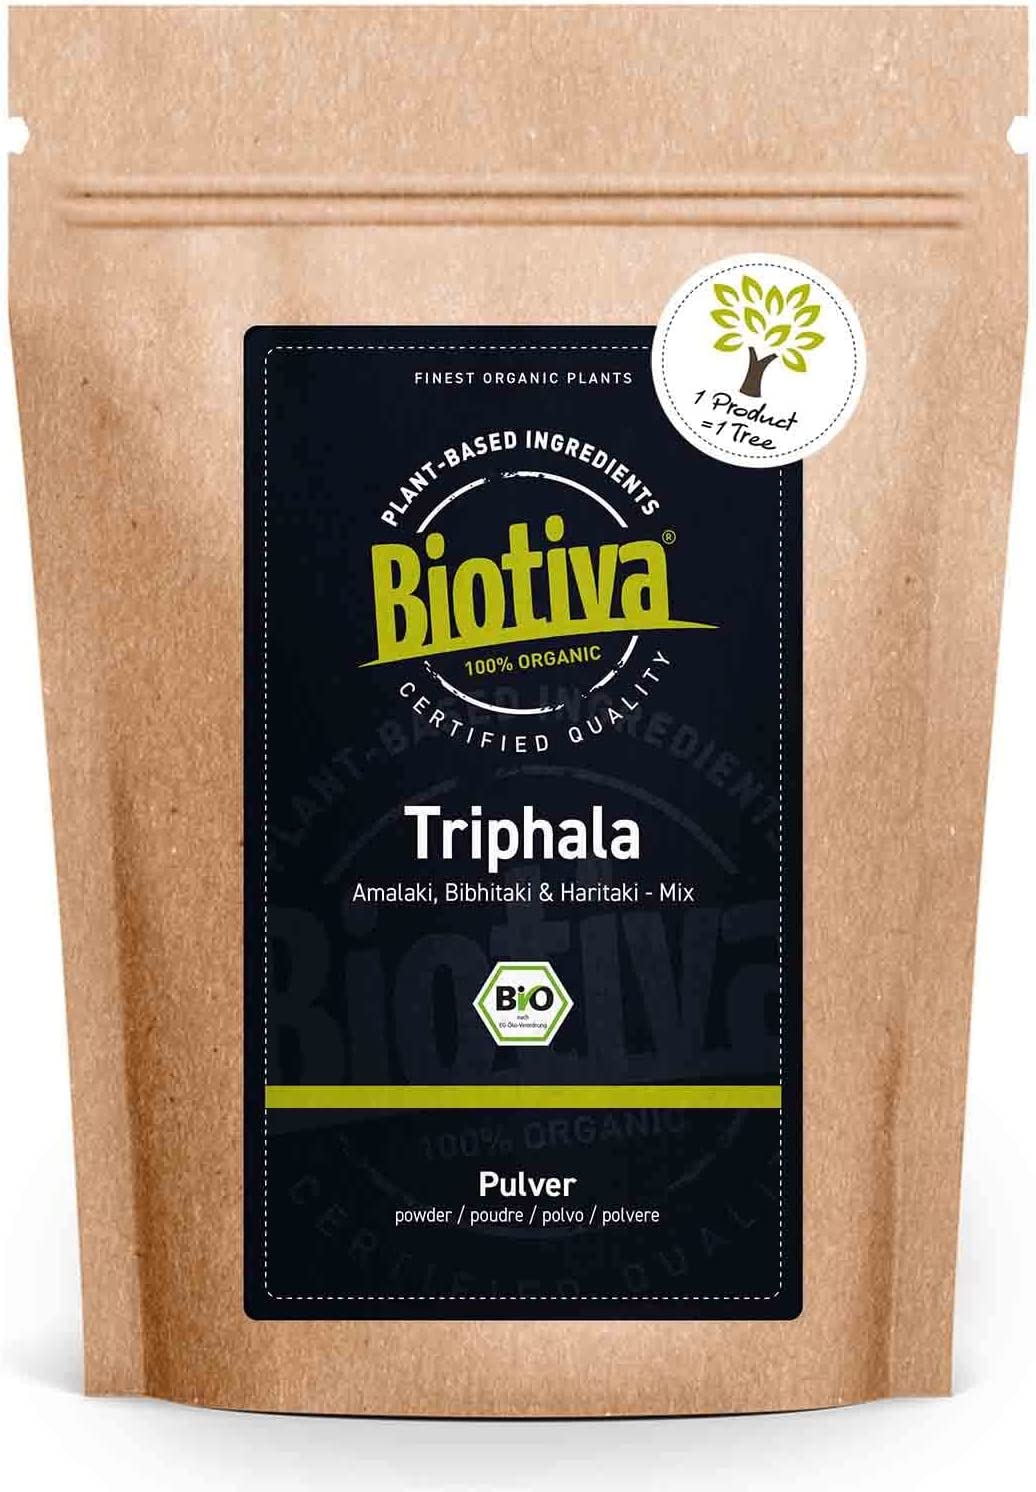 Biotiva Triphala Powder Organic 100 g from Amalaki, Haritaki, Bibhitaki